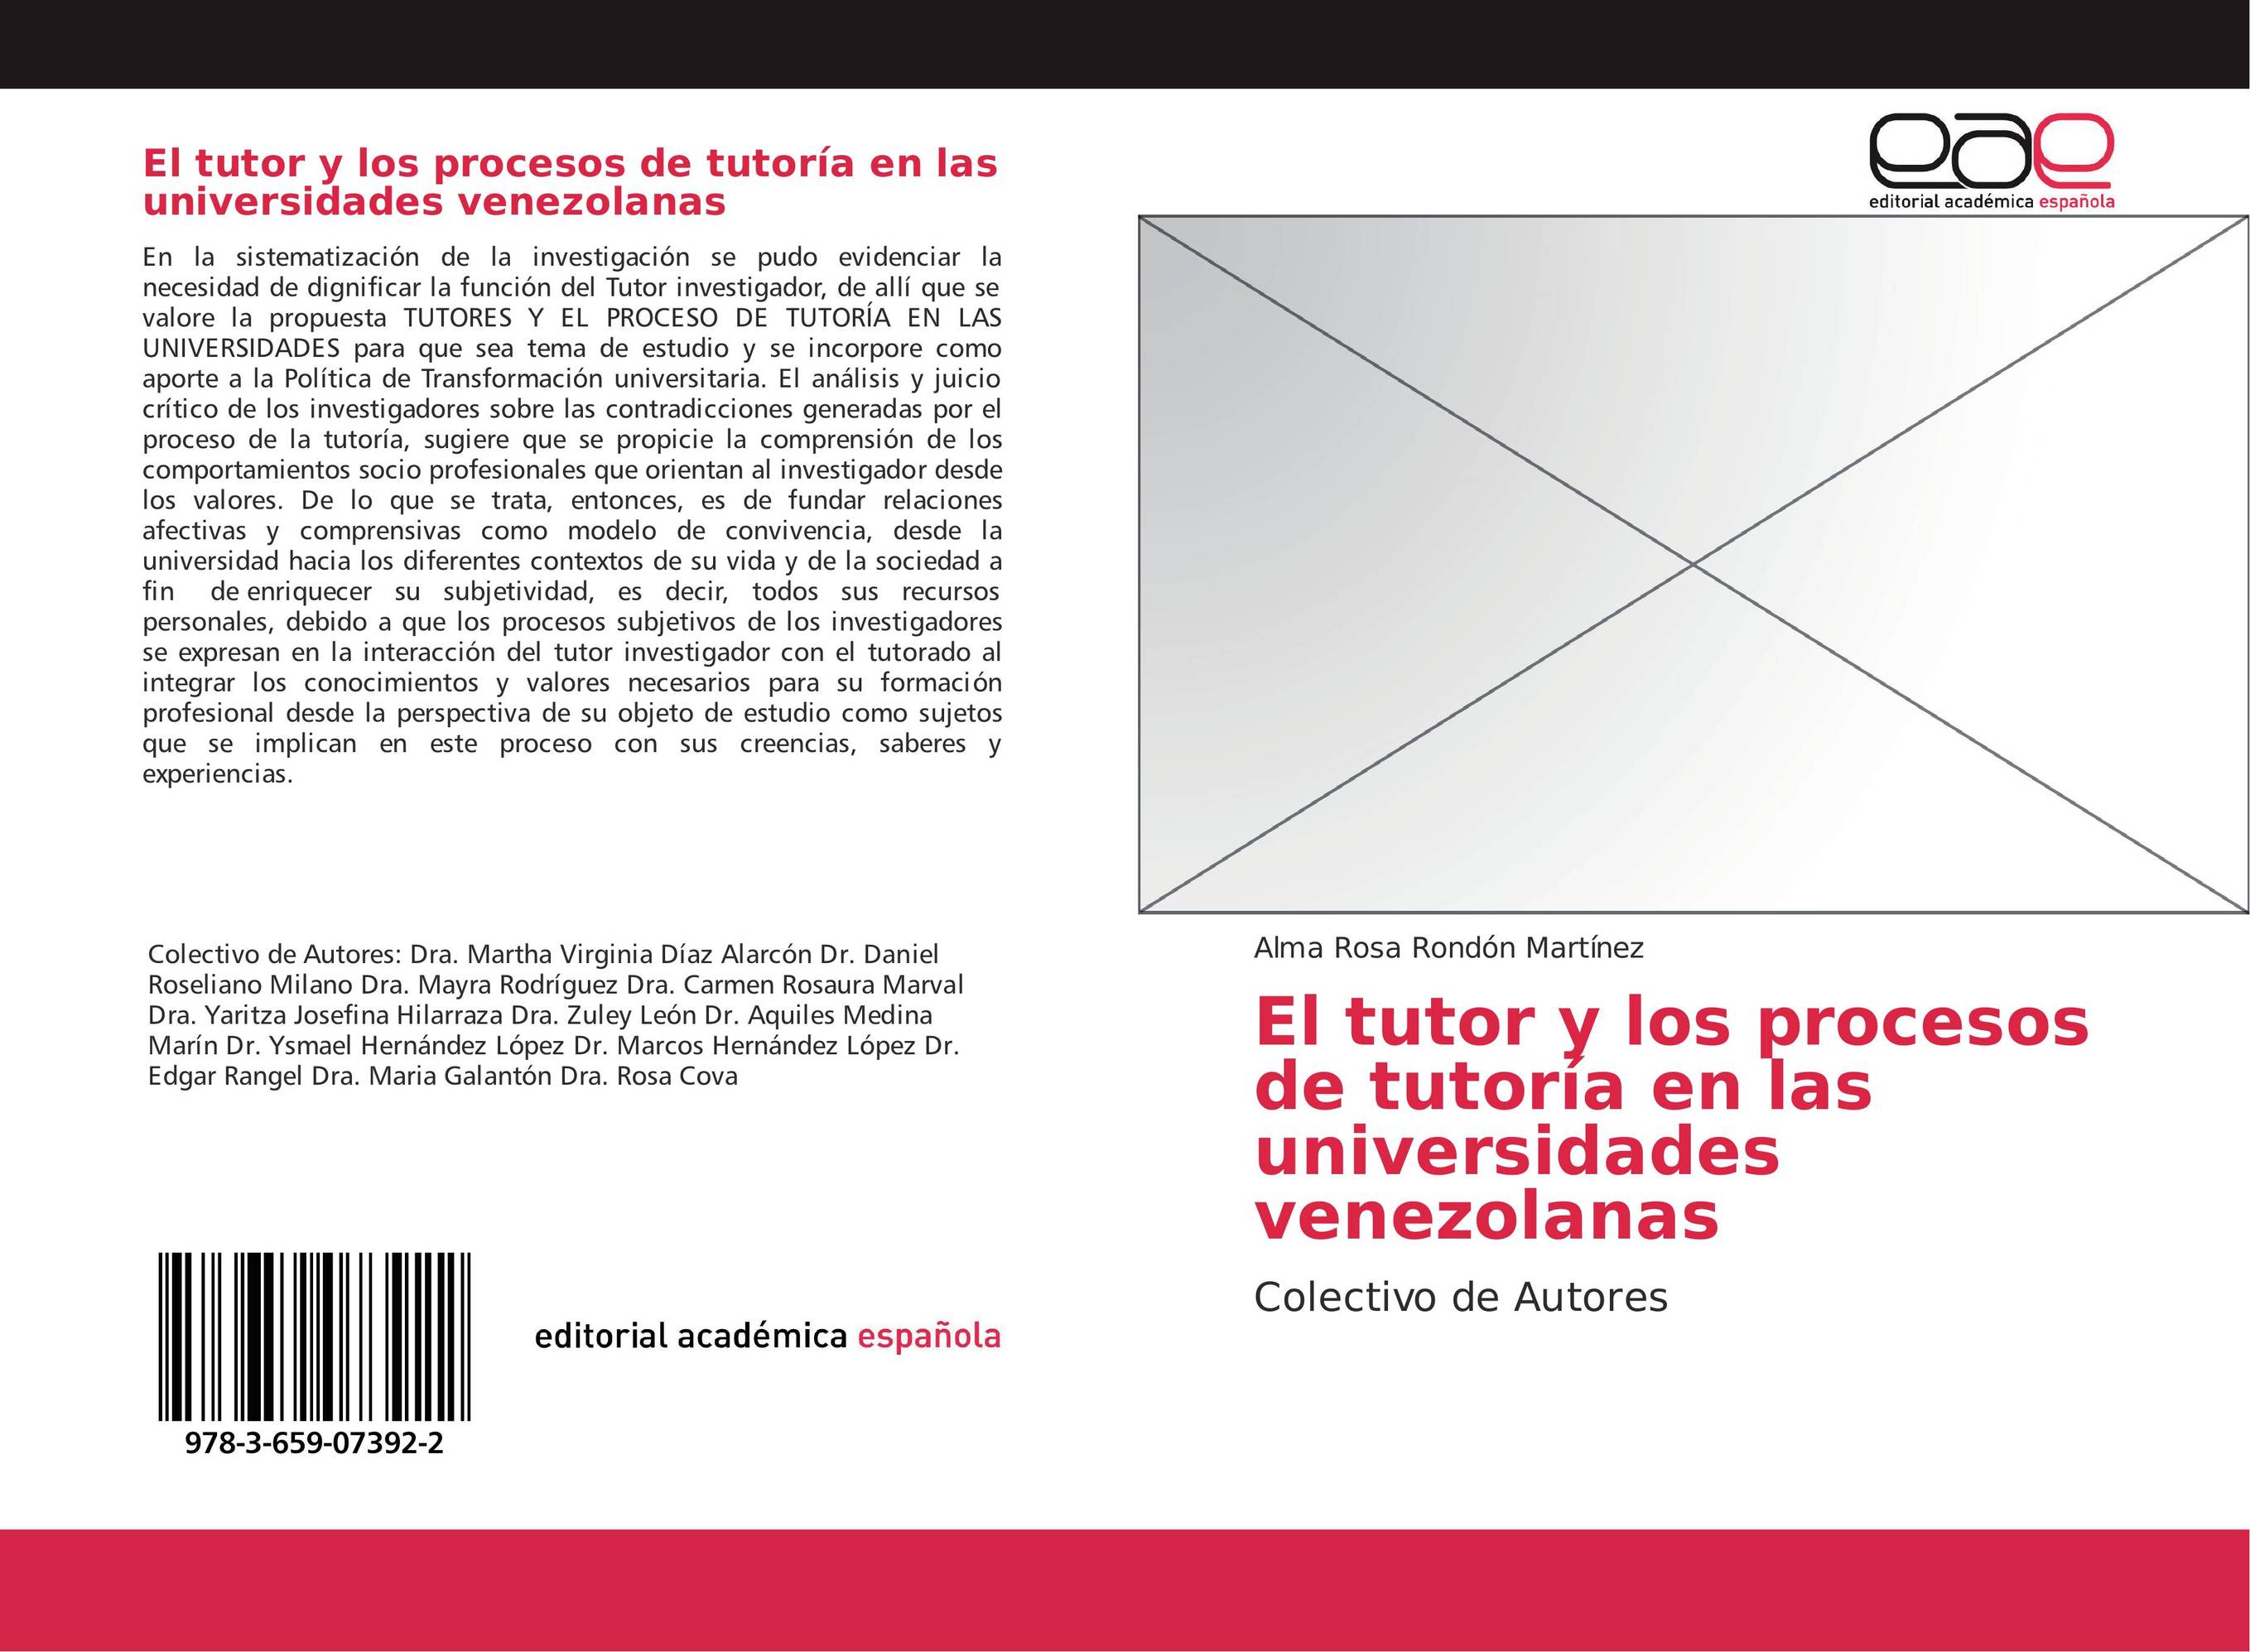 El tutor y los procesos de tutoría en las universidades venezolanas